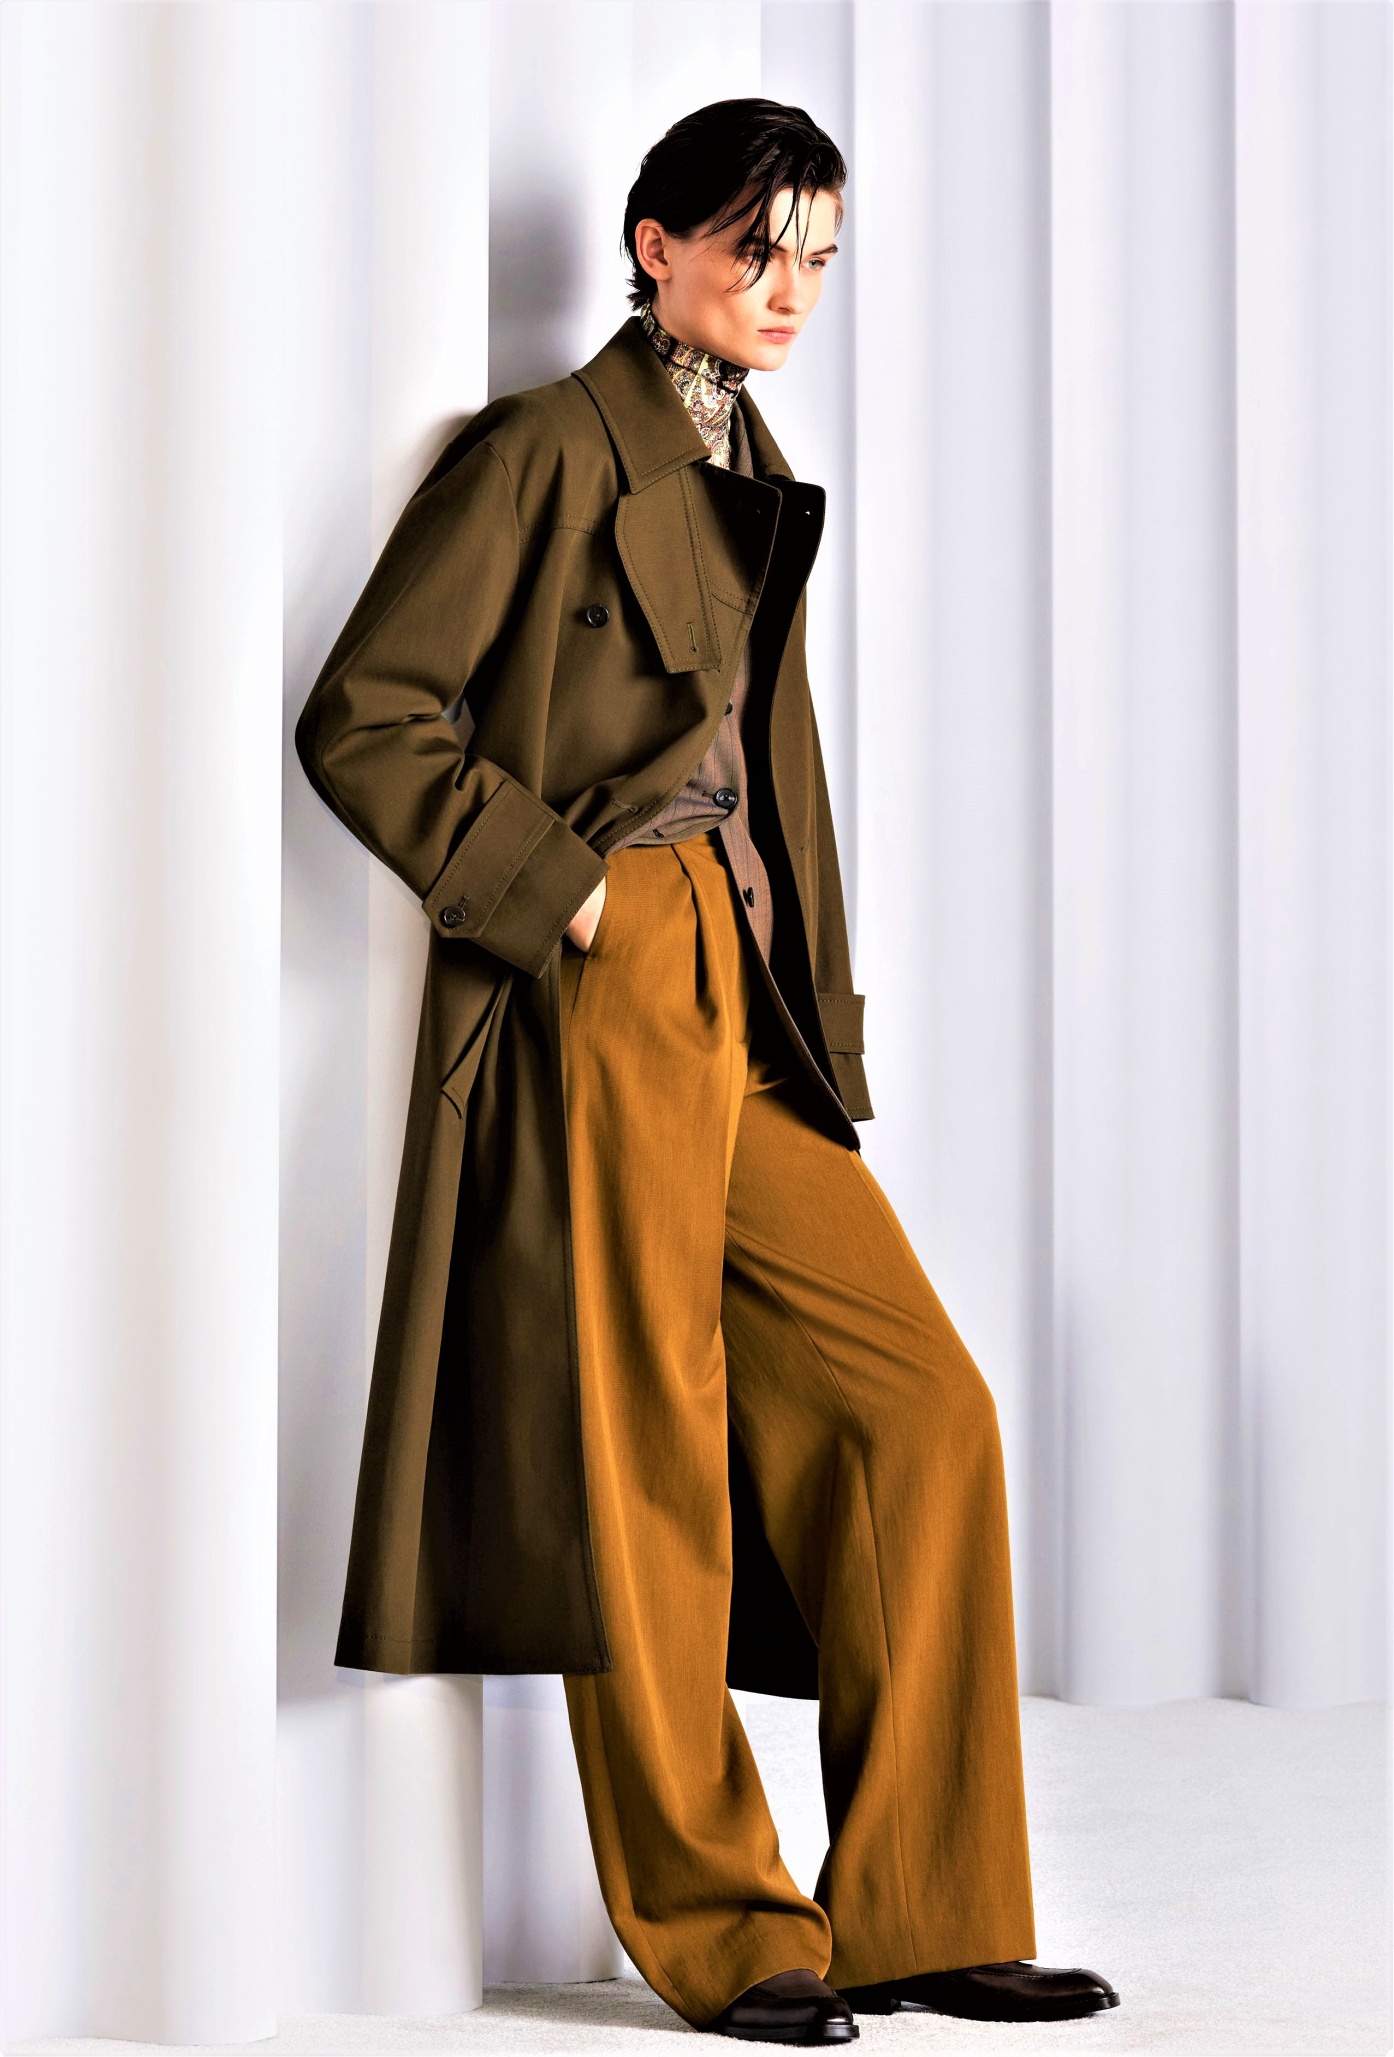 Paris 1 Paul Smith Gold pants khaki coat Fed (2) cropped.jfif